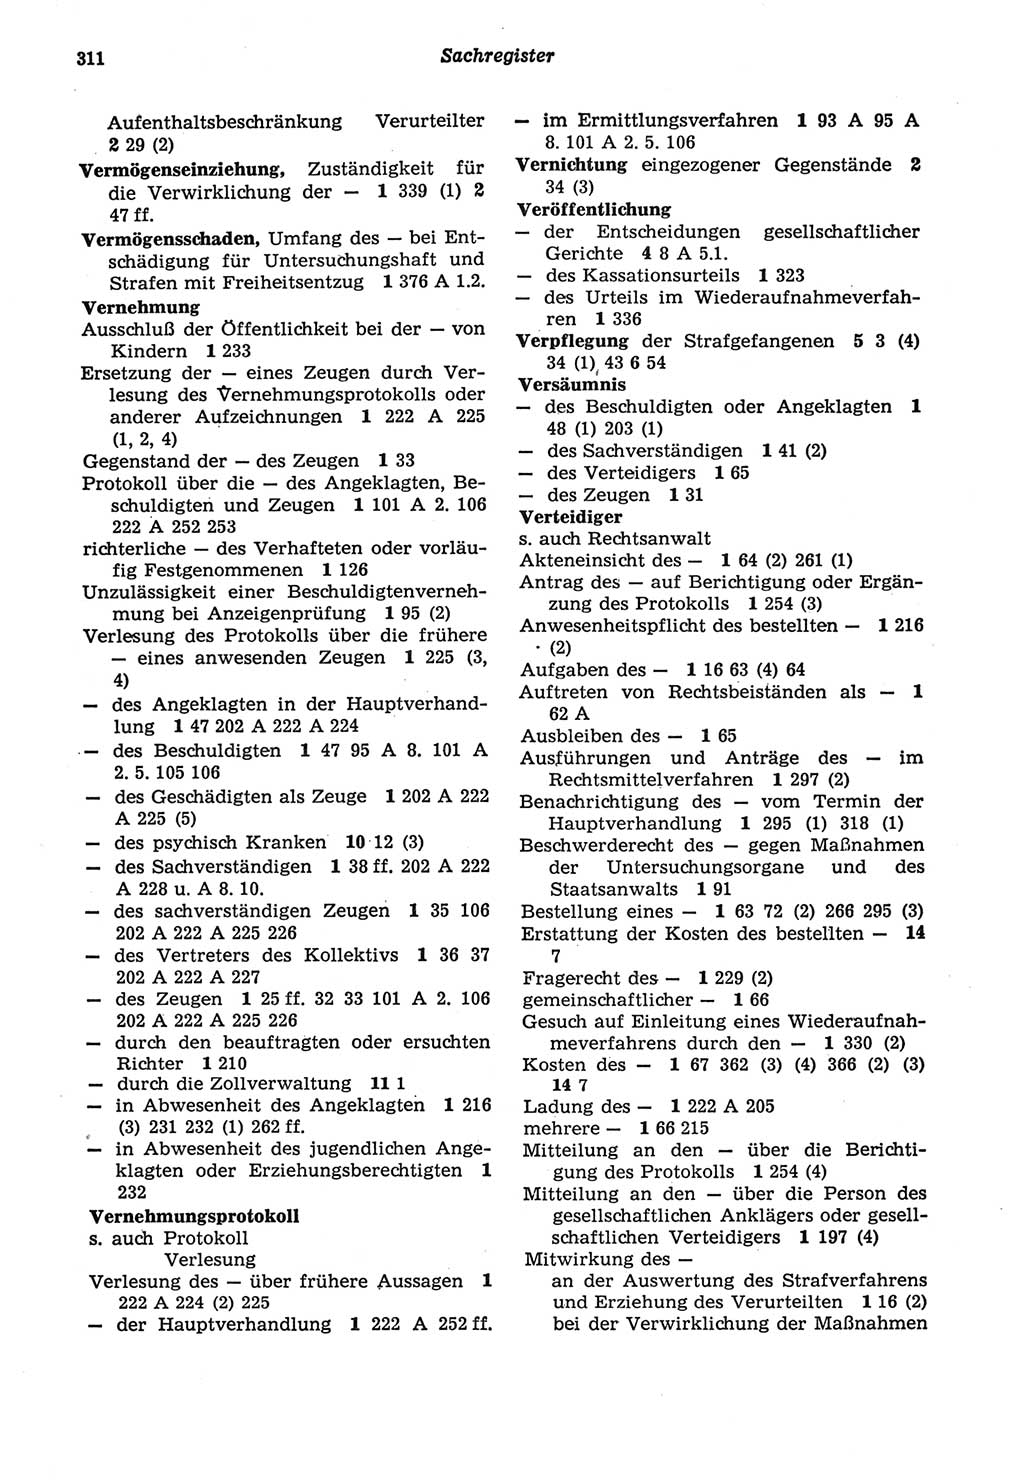 Strafprozeßordnung (StPO) der Deutschen Demokratischen Republik (DDR) sowie angrenzende Gesetze und Bestimmungen 1977, Seite 311 (StPO DDR Ges. Best. 1977, S. 311)